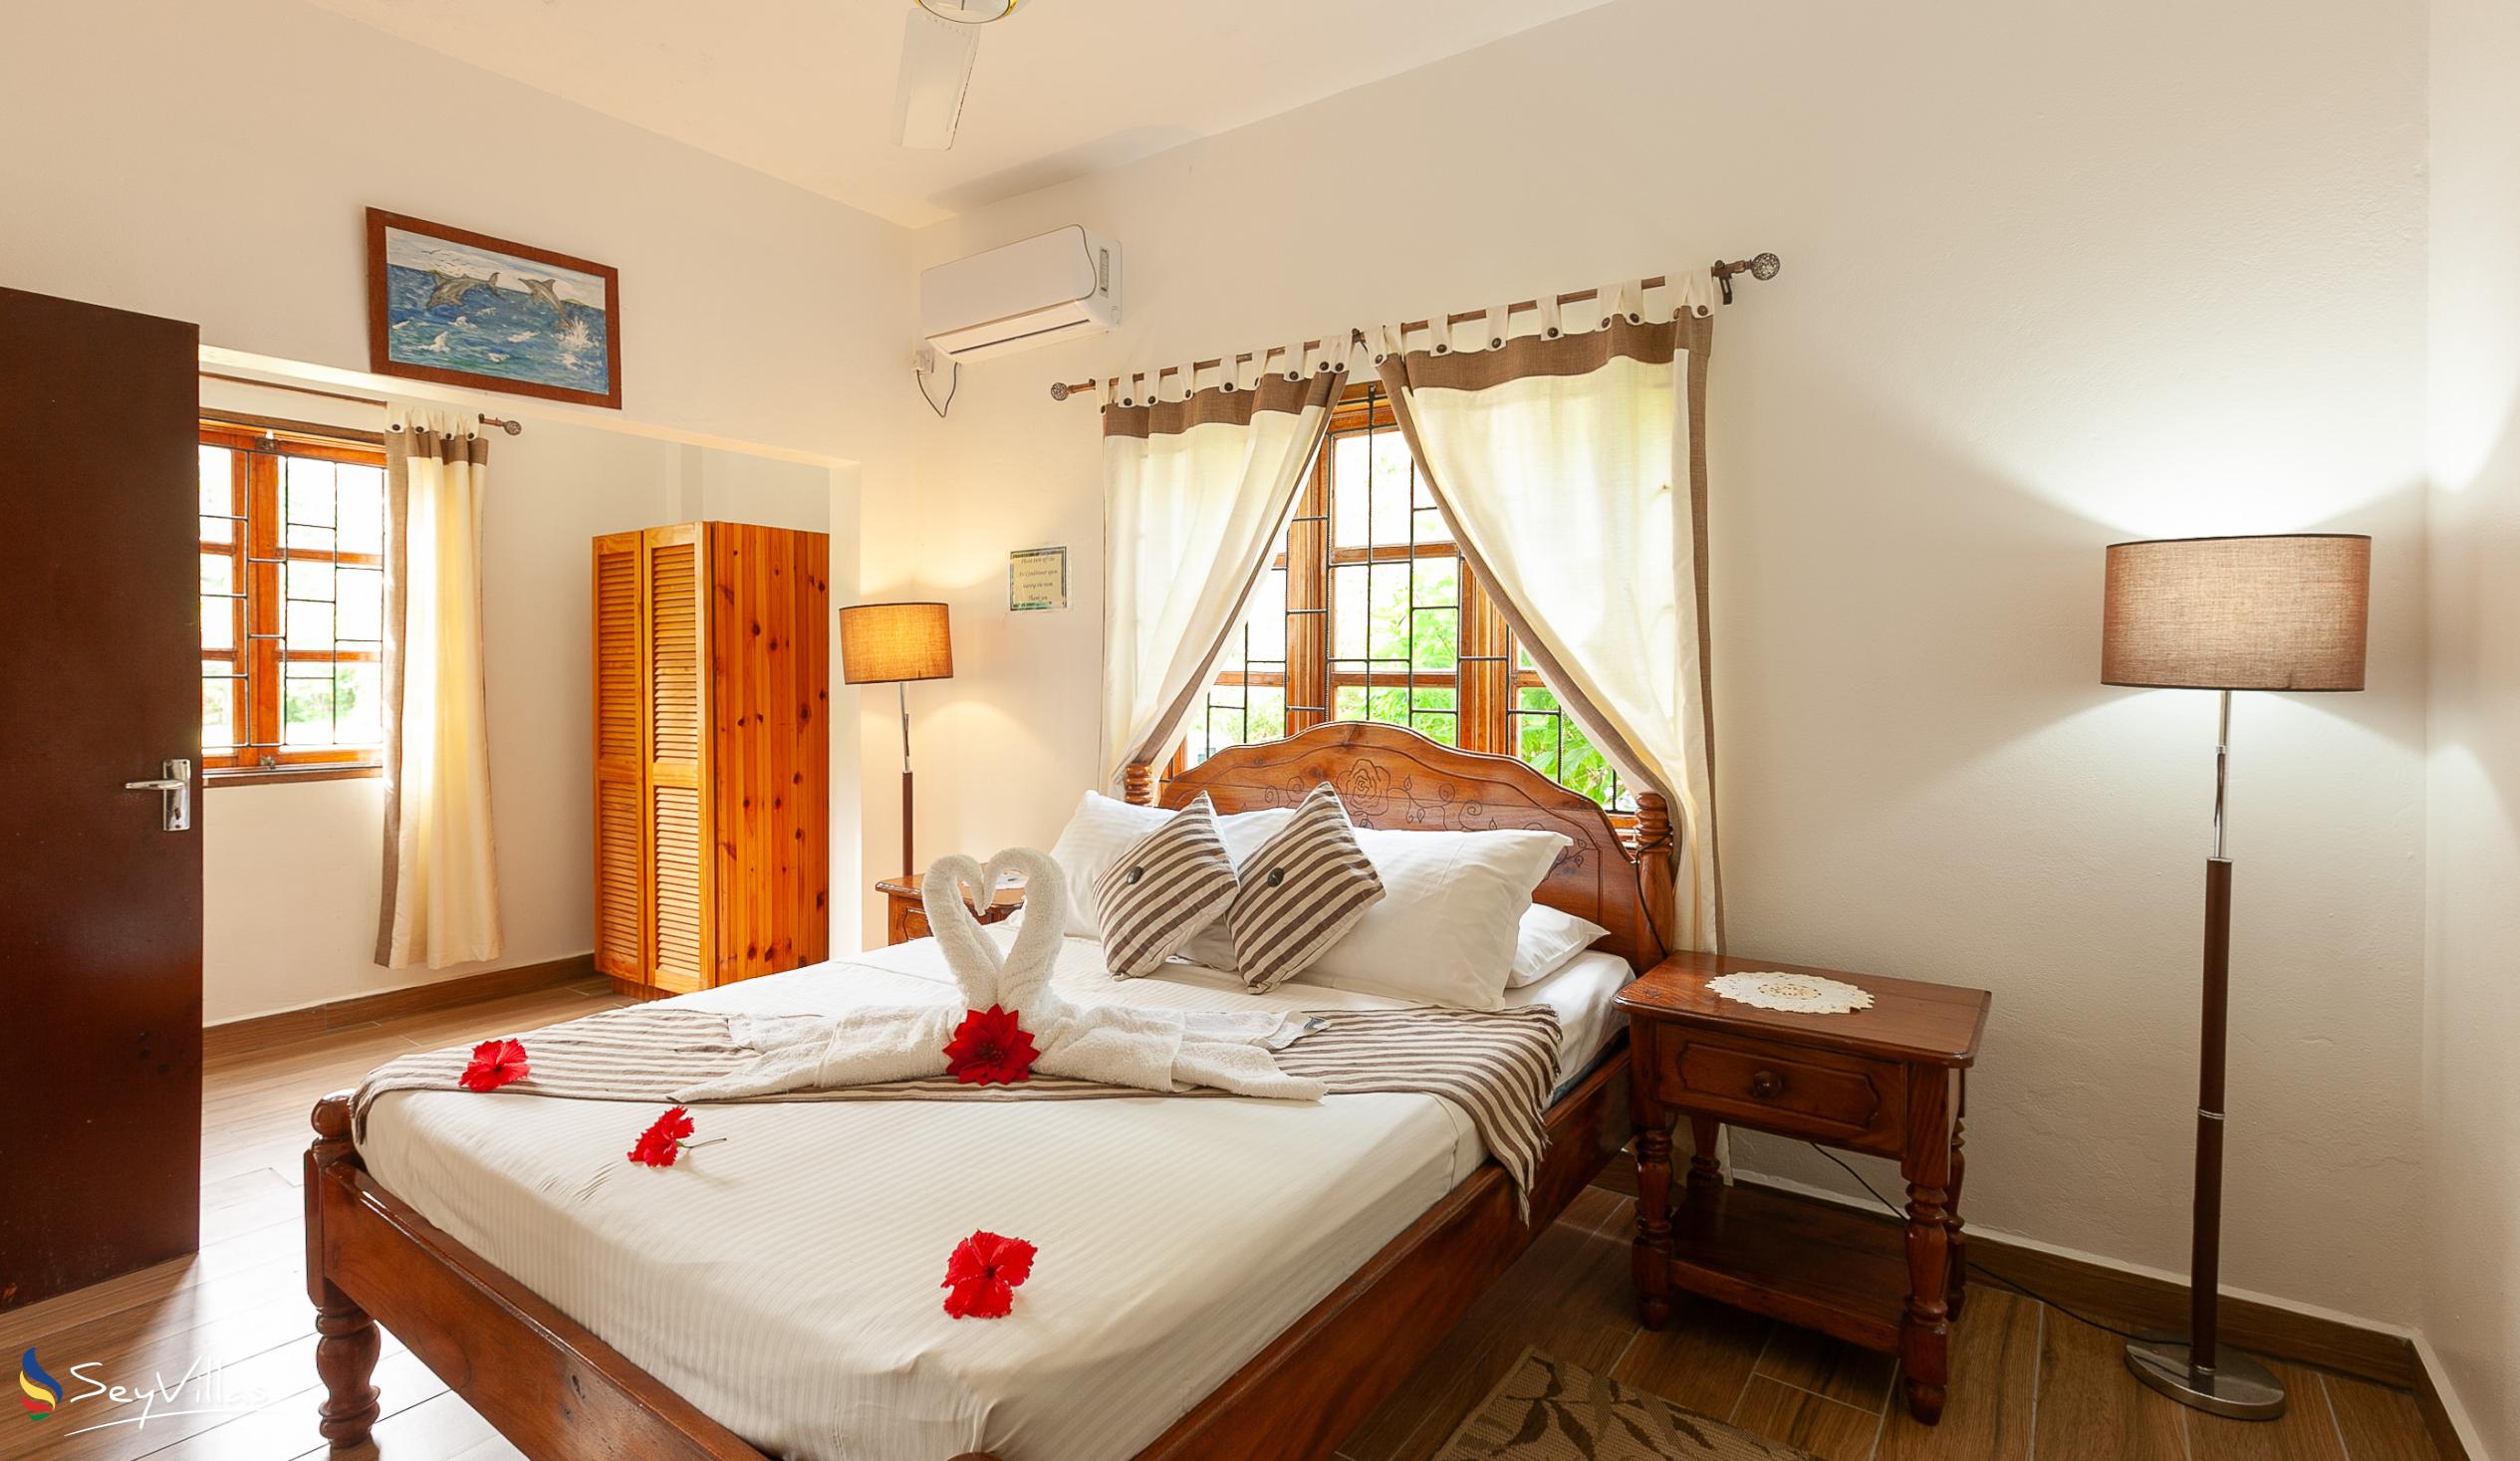 Photo 66: Tannette's Villa - Standard Double Room - La Digue (Seychelles)